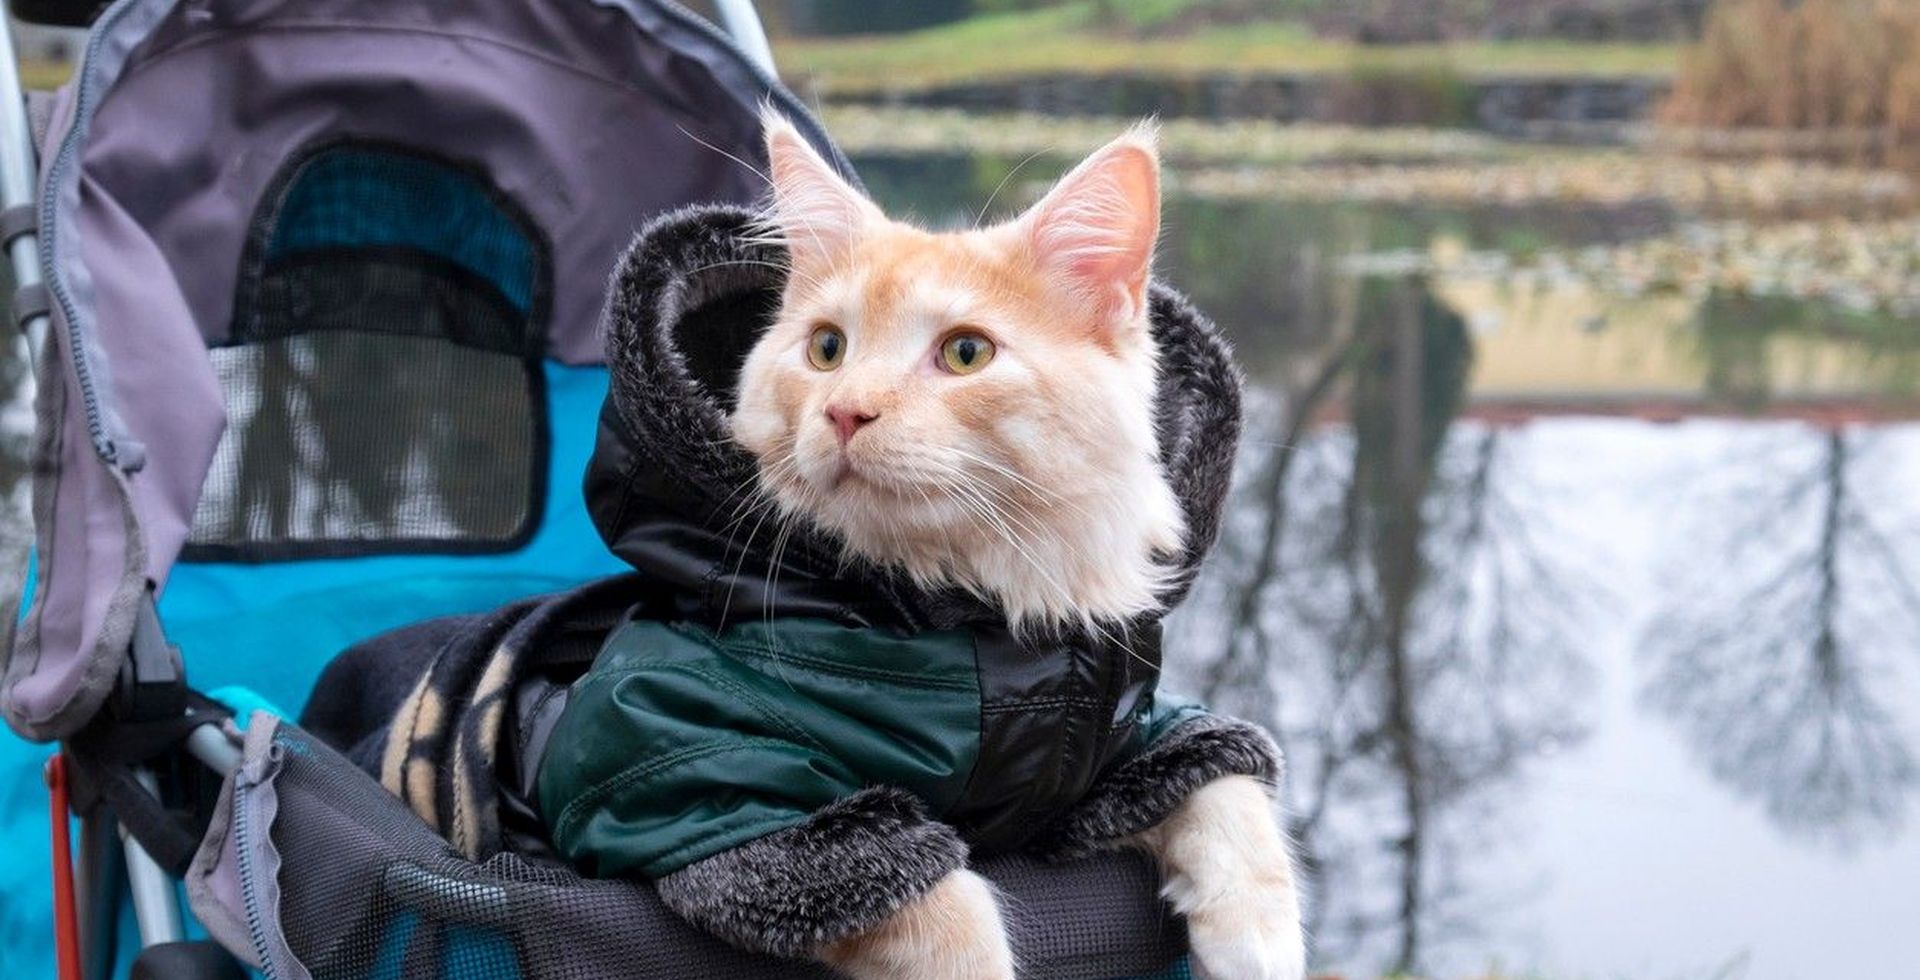 A cat in a coat sitting in a pet stroller